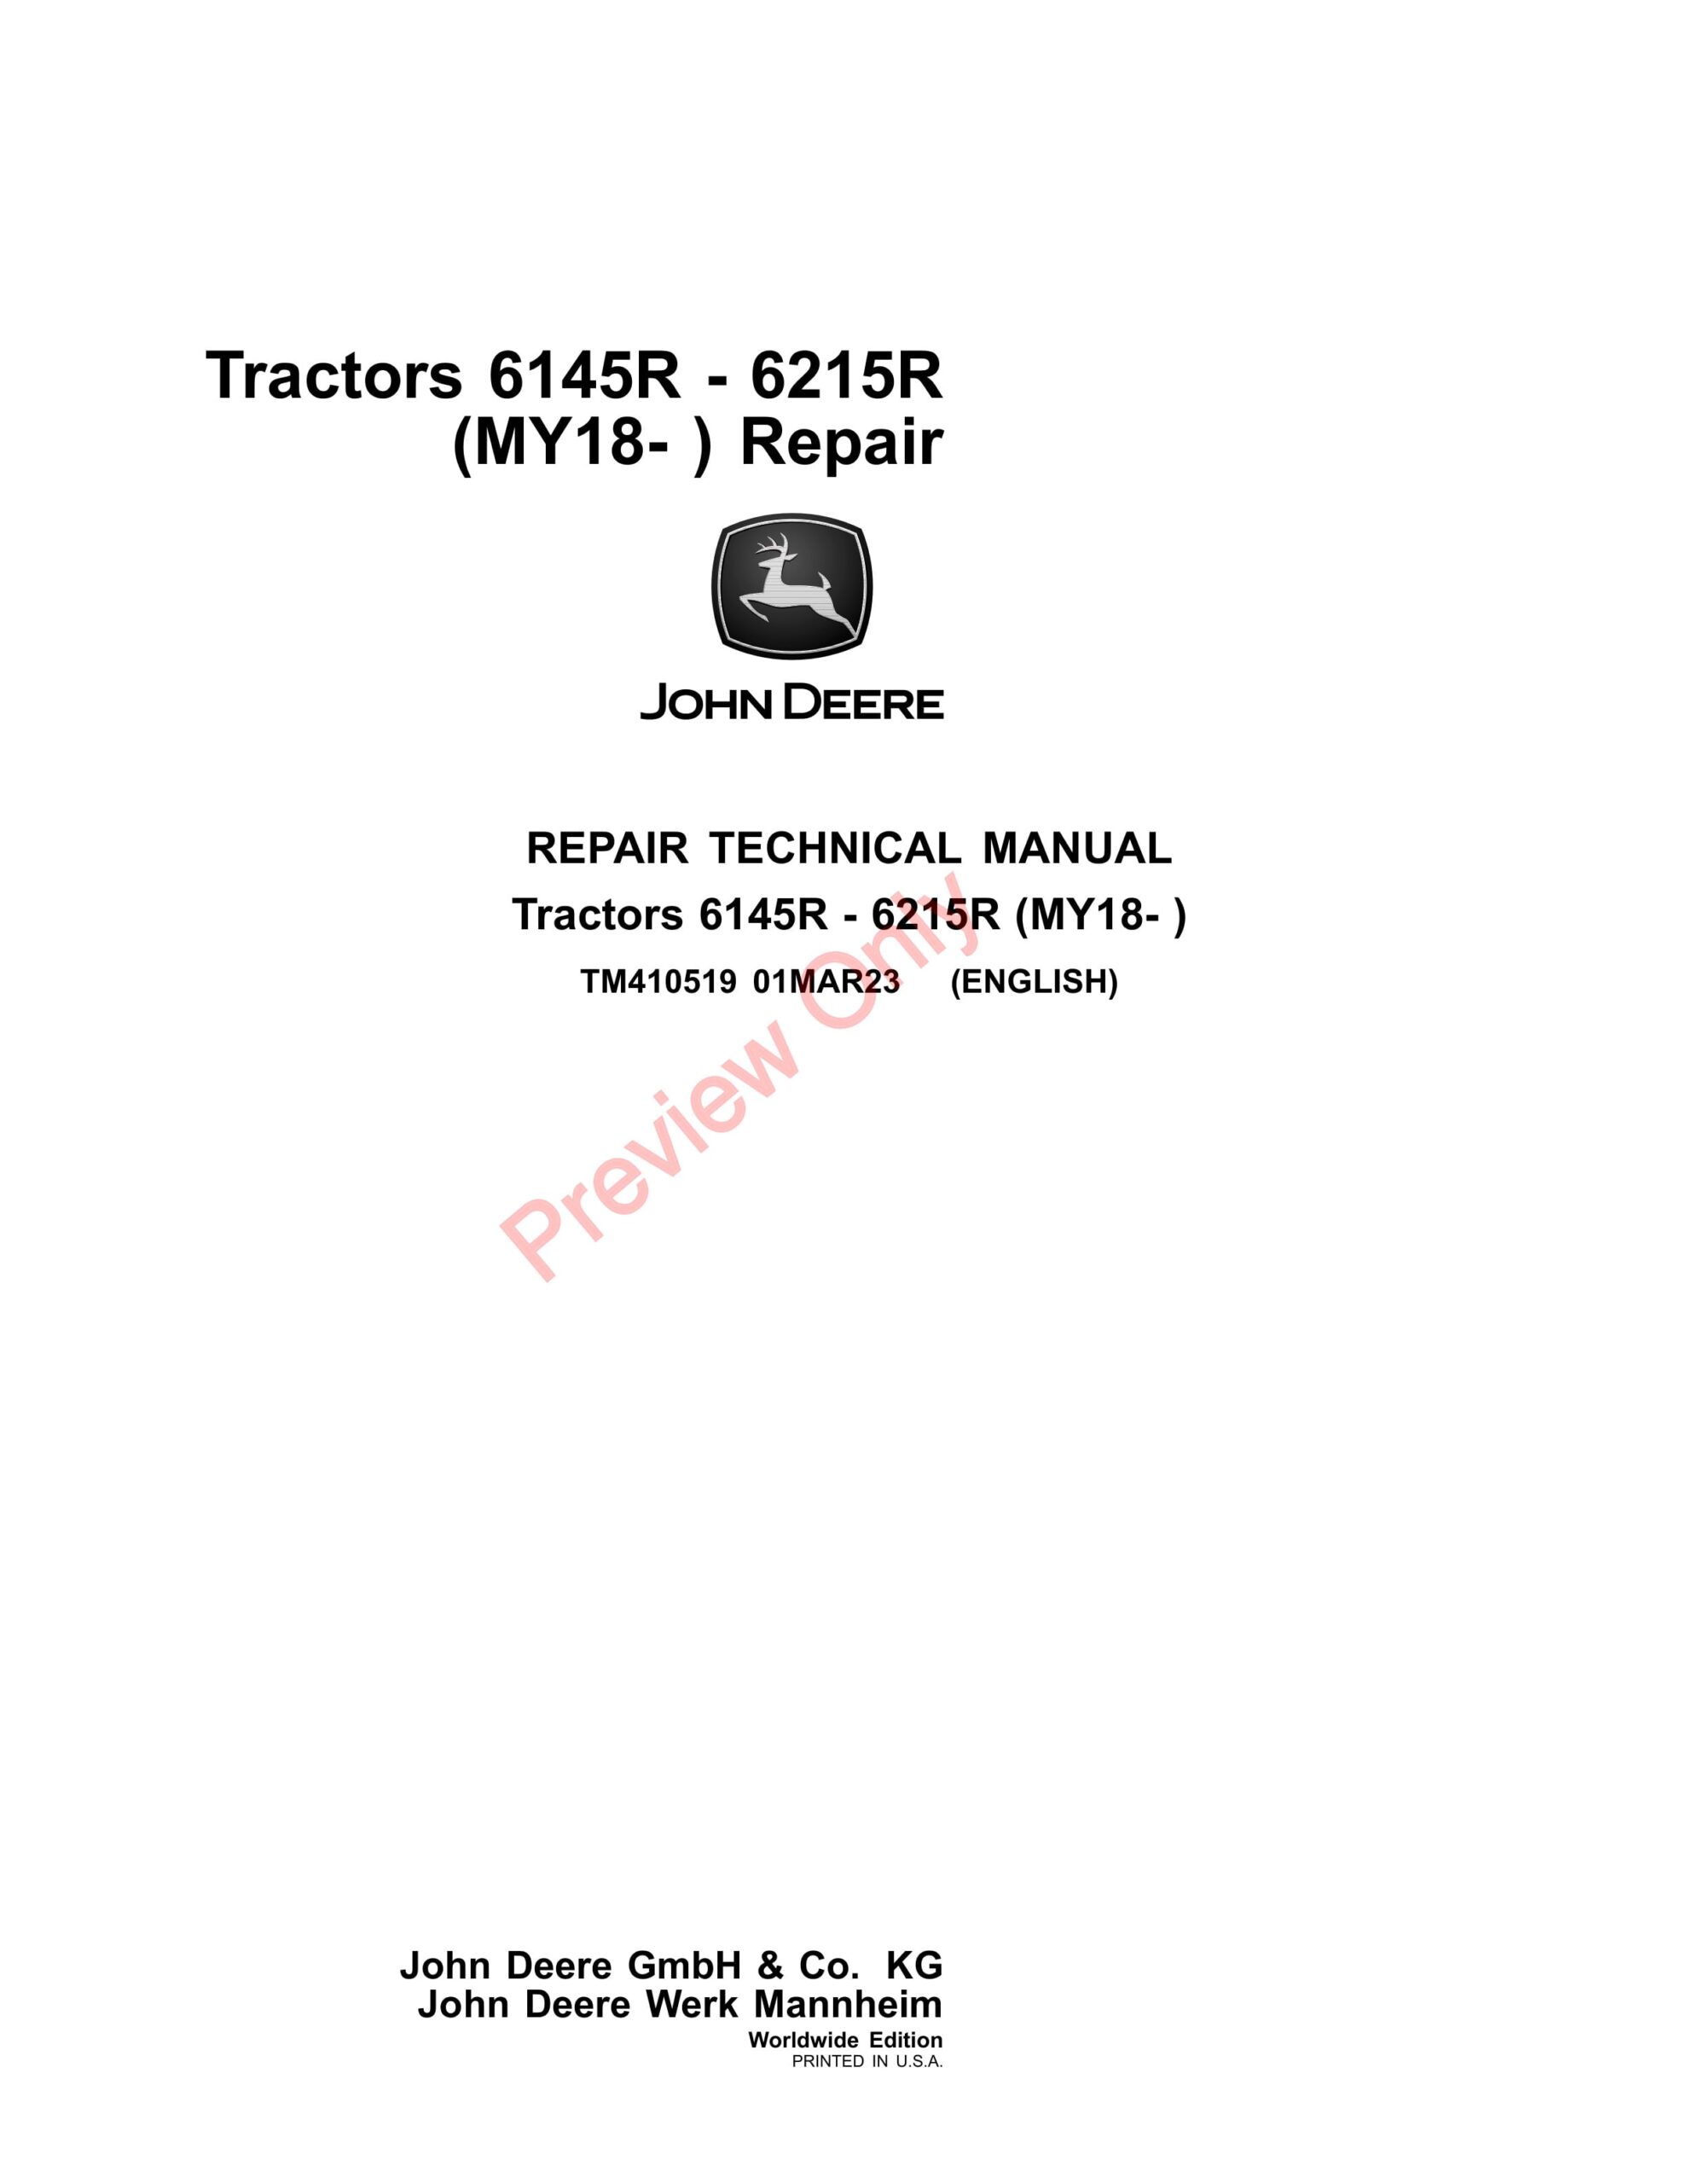 John Deere Tractors 6145R – 6215R (MY18- ) Repair Technical Manual TM410519 01MAR23-1